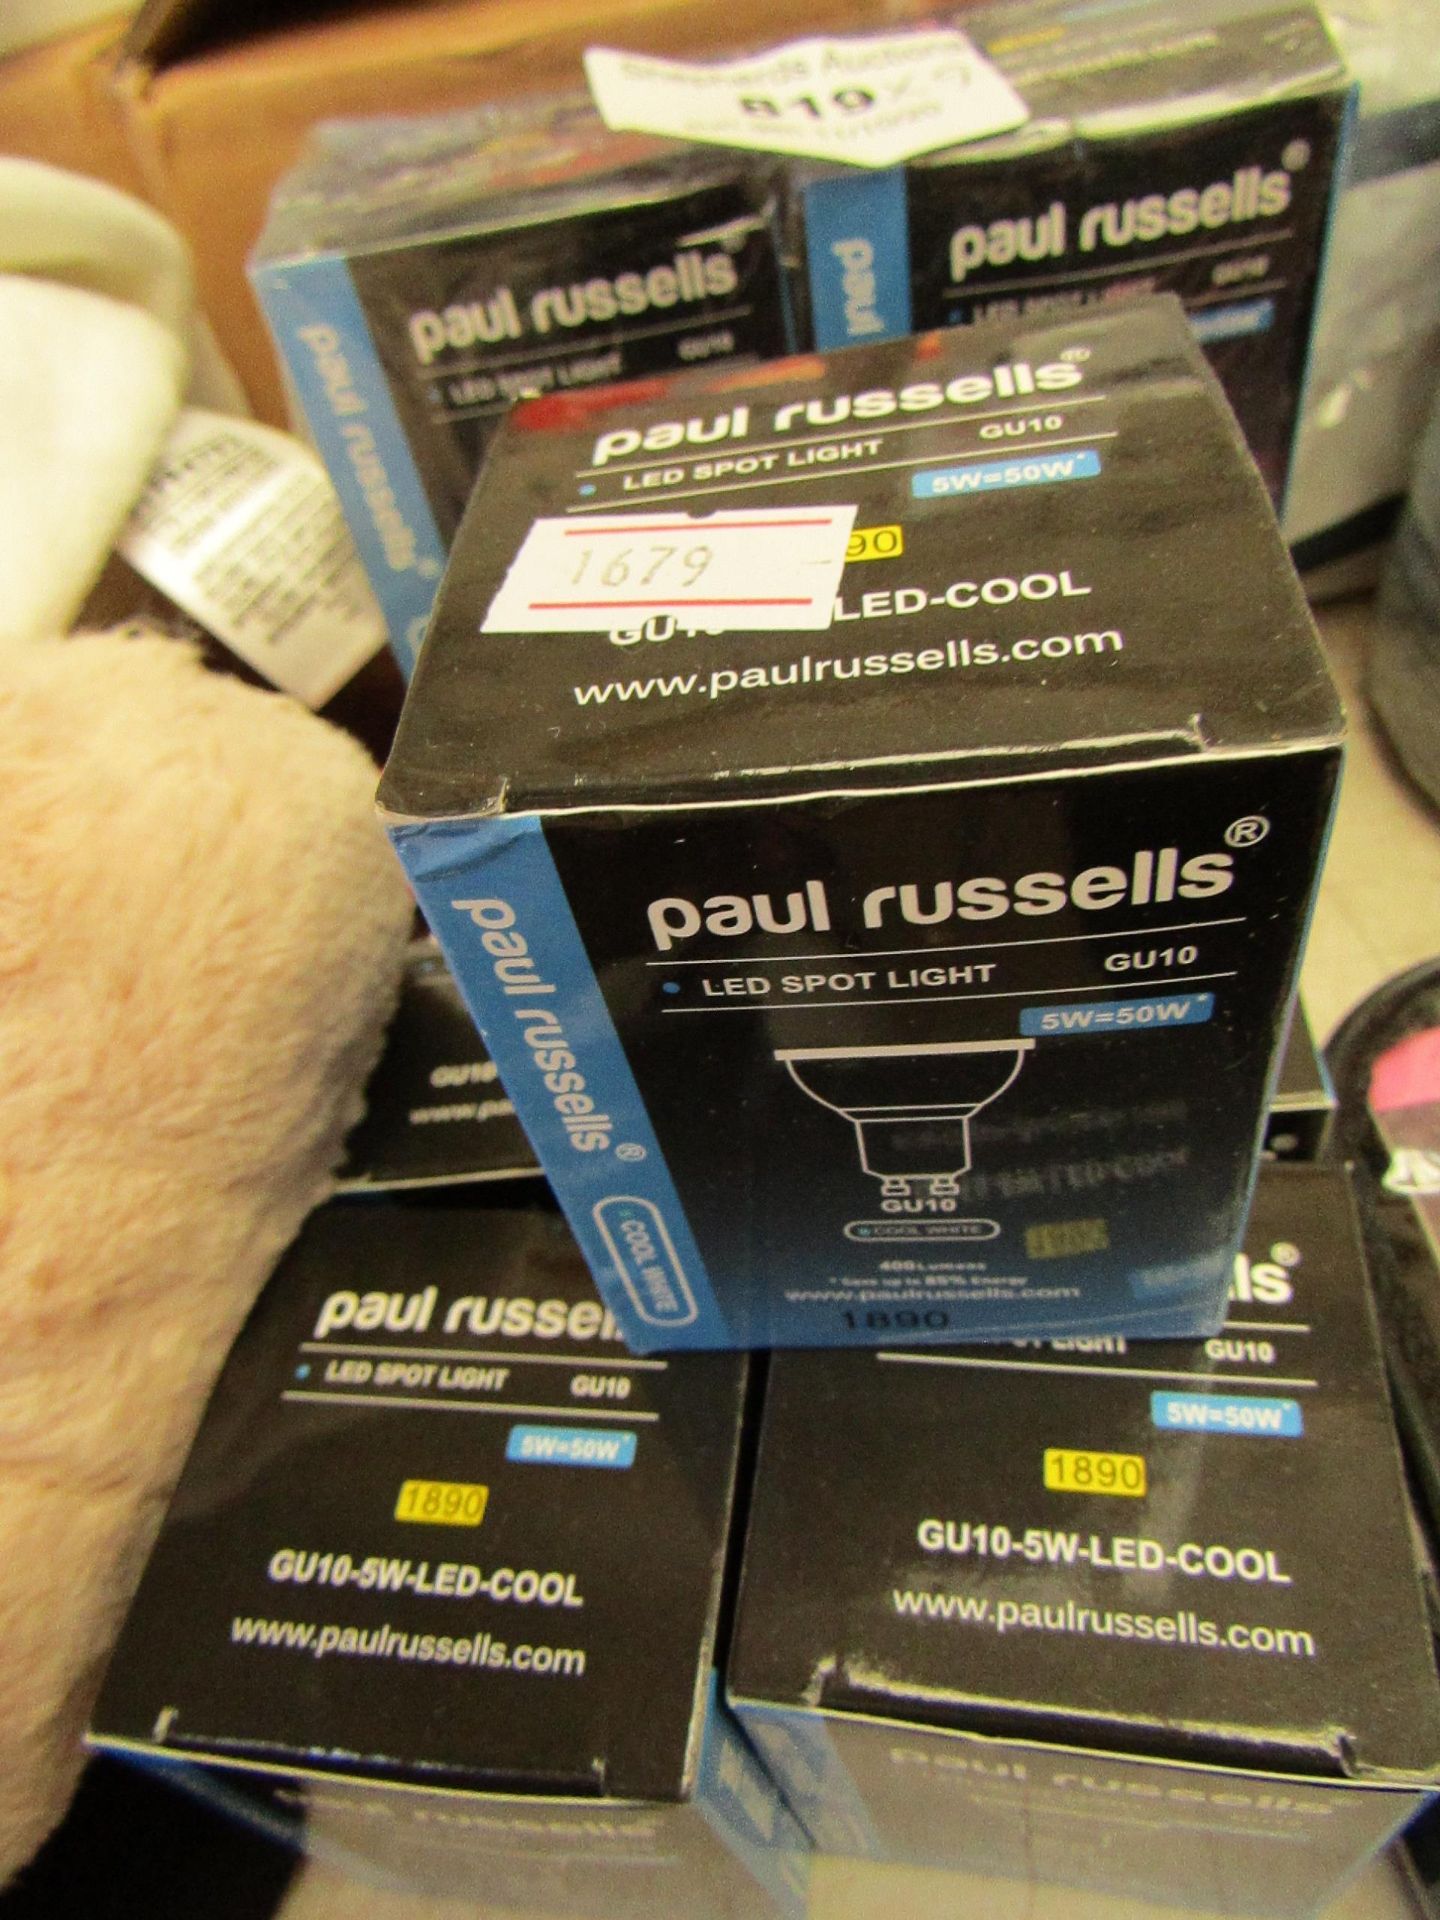 9 x Paul russells GU11 LED Spotlight Bulbs. Boxed